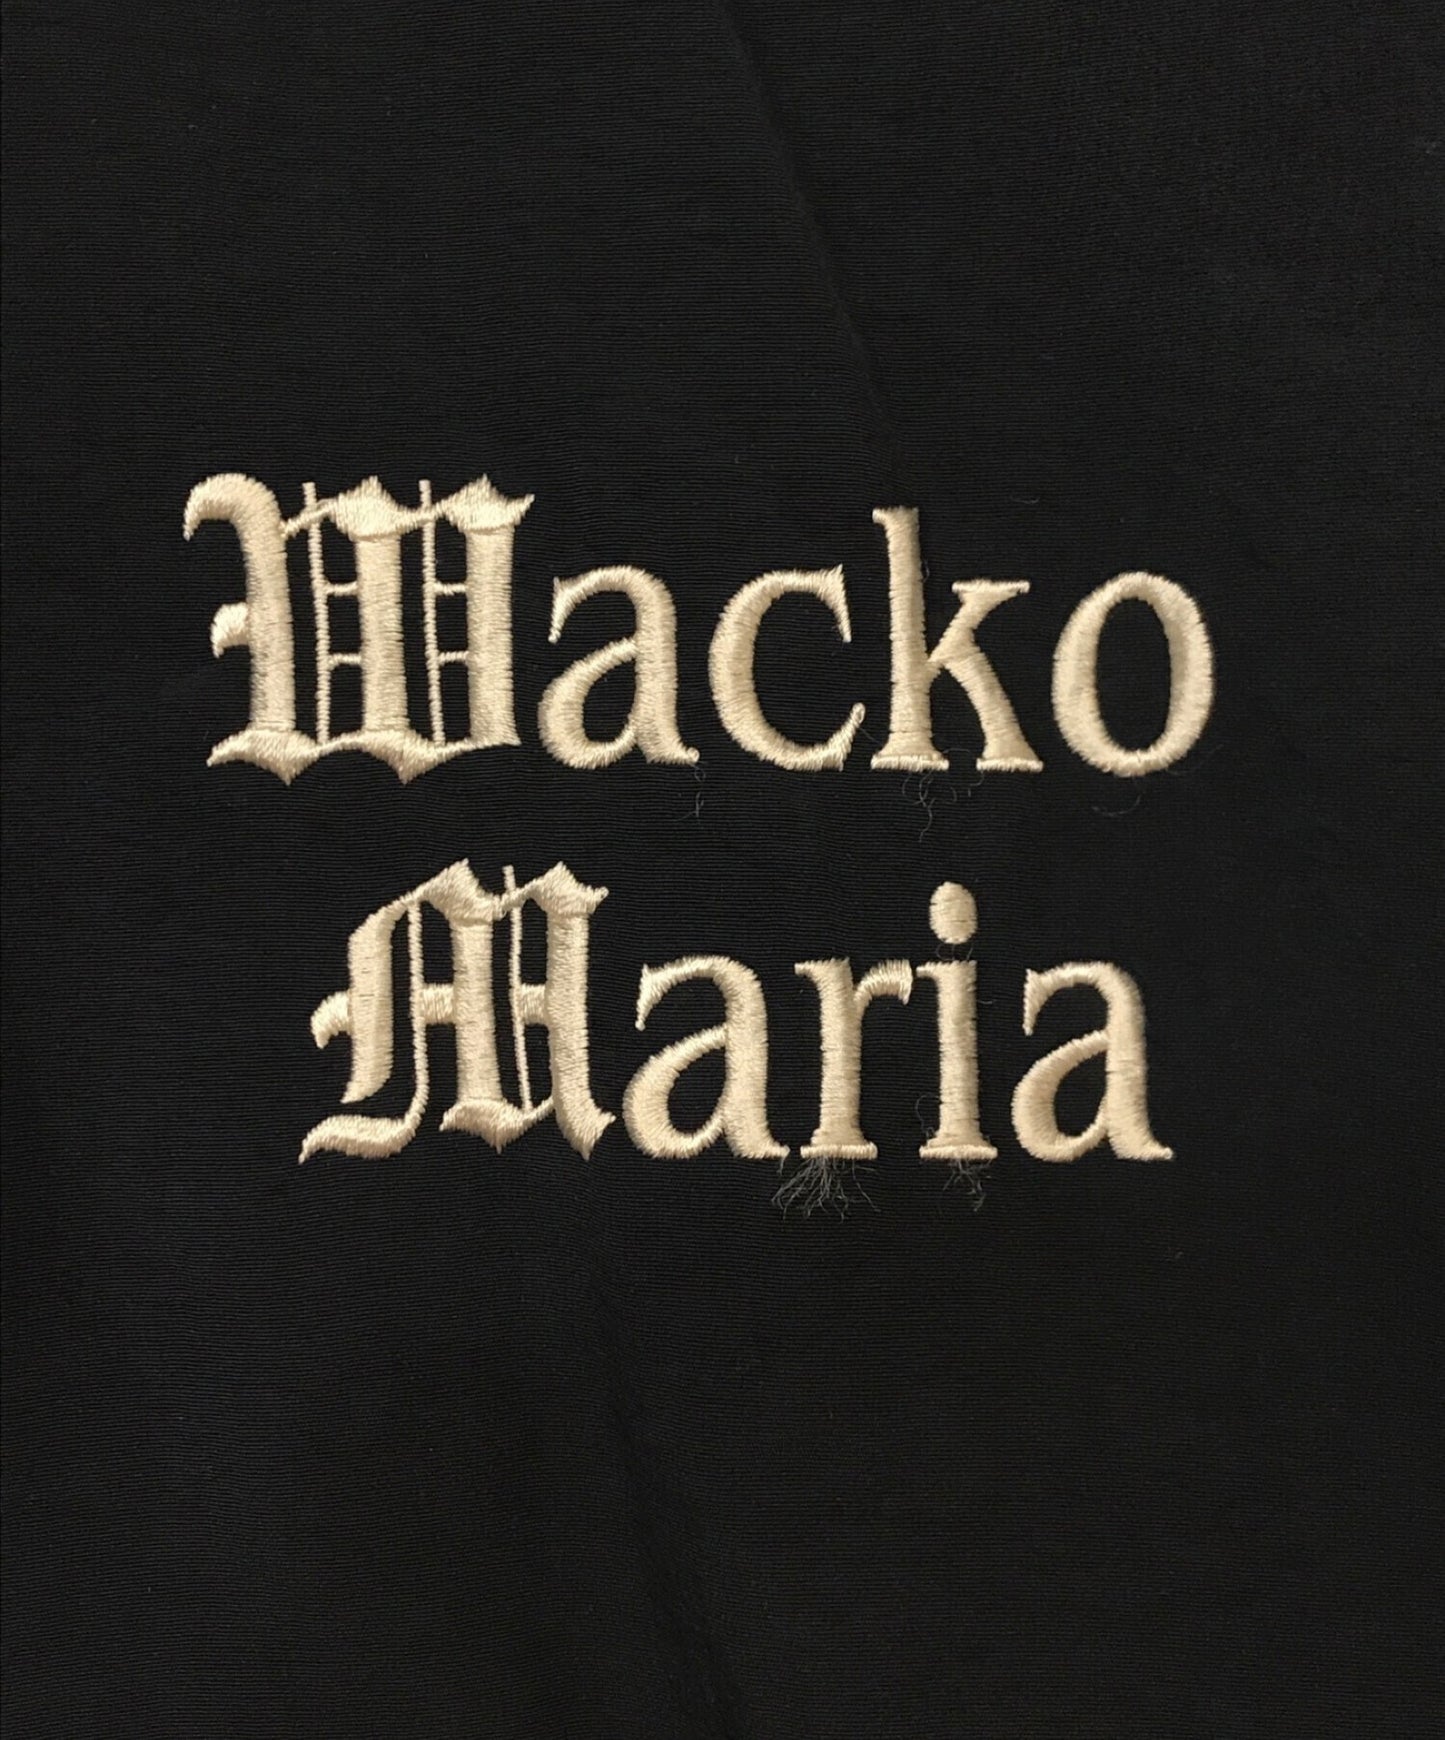 [Pre-owned] WACKO MARIA Nylon Track Jacket